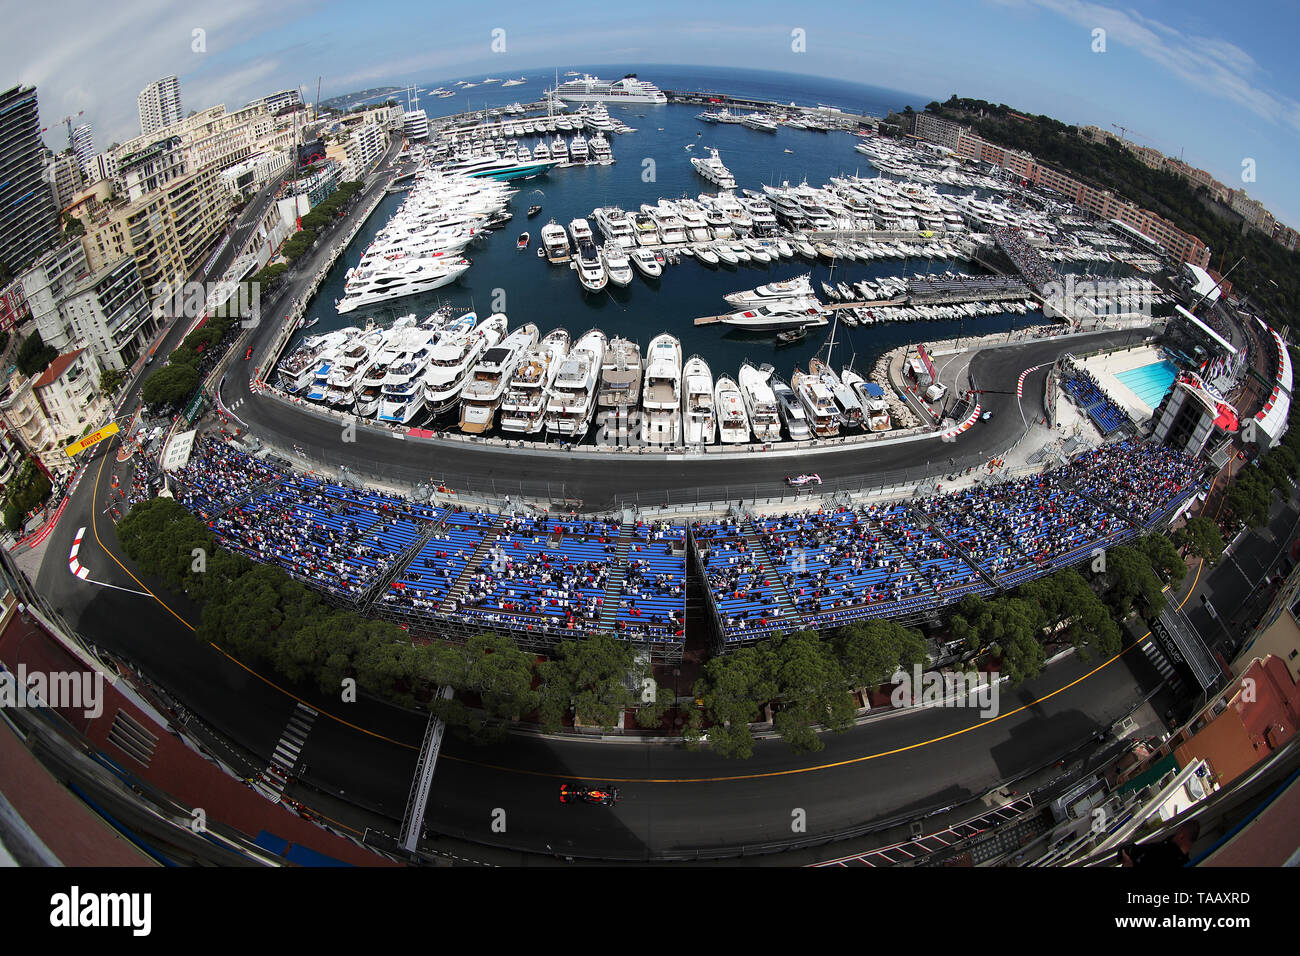 Una vista di vetture passando il Tabac e Louis Chiron angoli intorno al porto di Monaco durante il secondo turno di prove libere sul circuito de Monaco, Monaco. Foto Stock